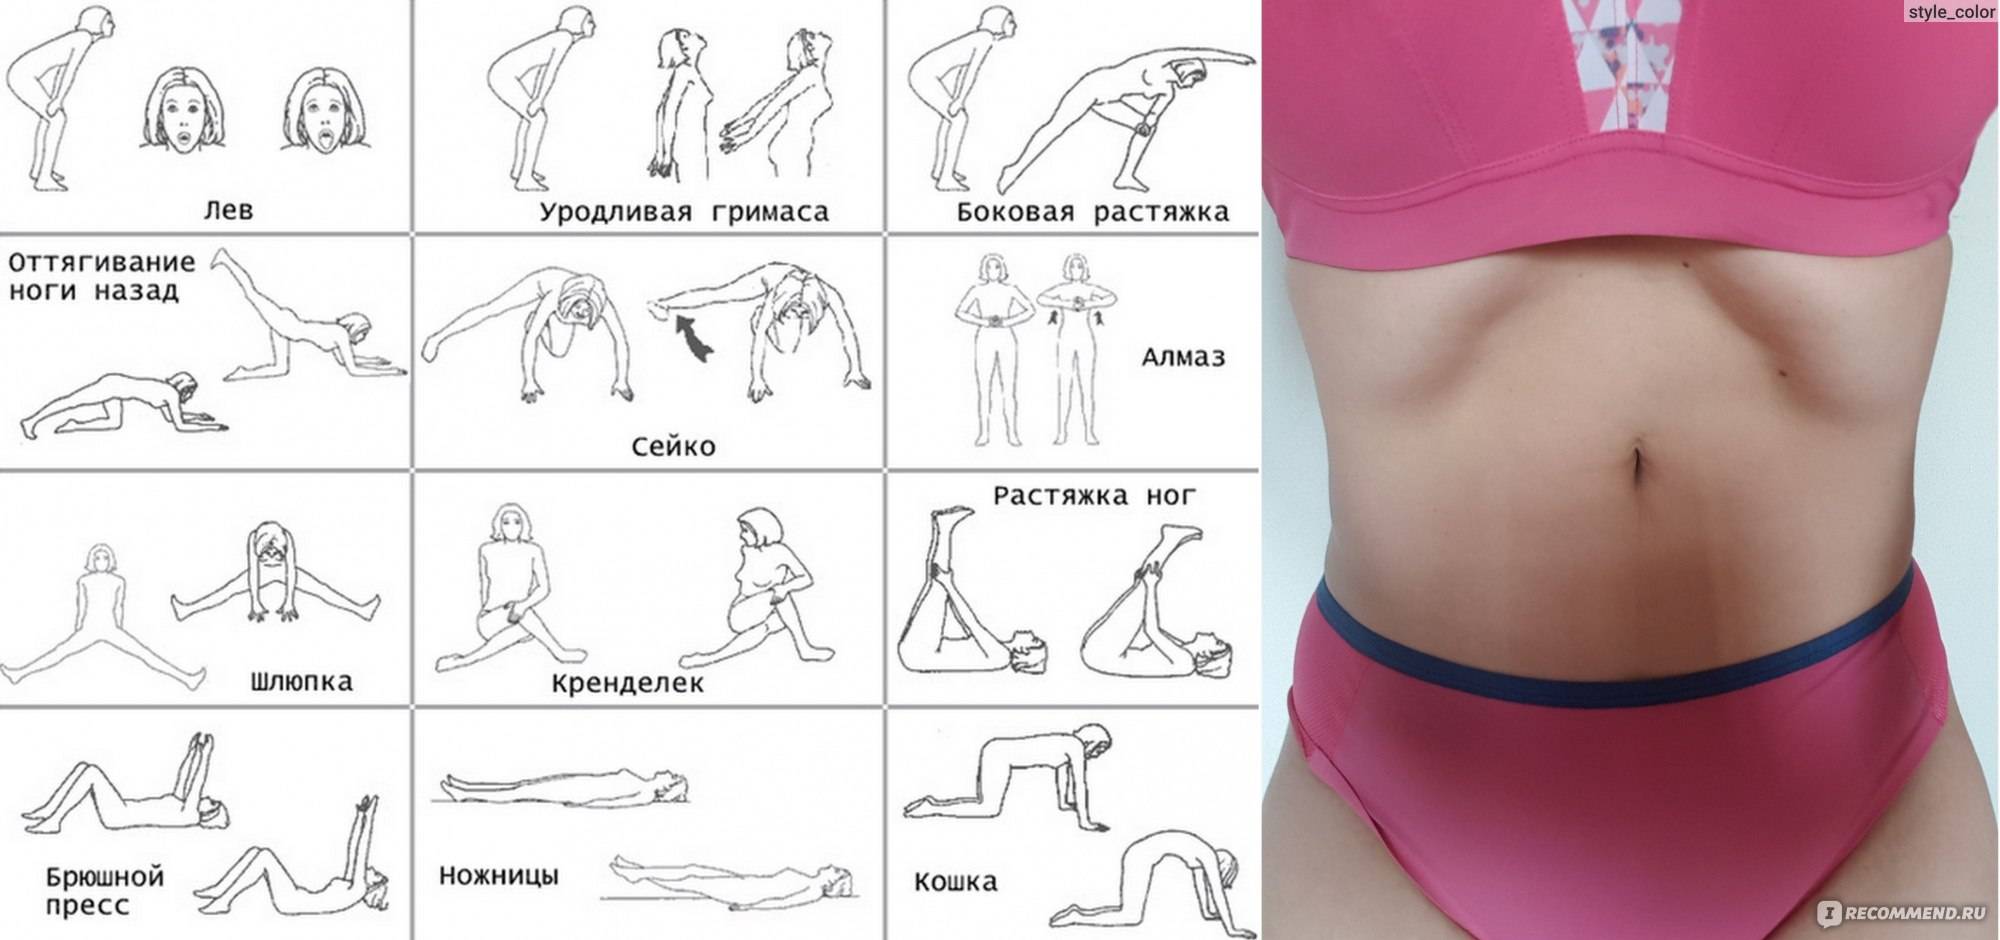 Дыхательная гимнастика для похудения живота и боков: упражнения на видео и фото